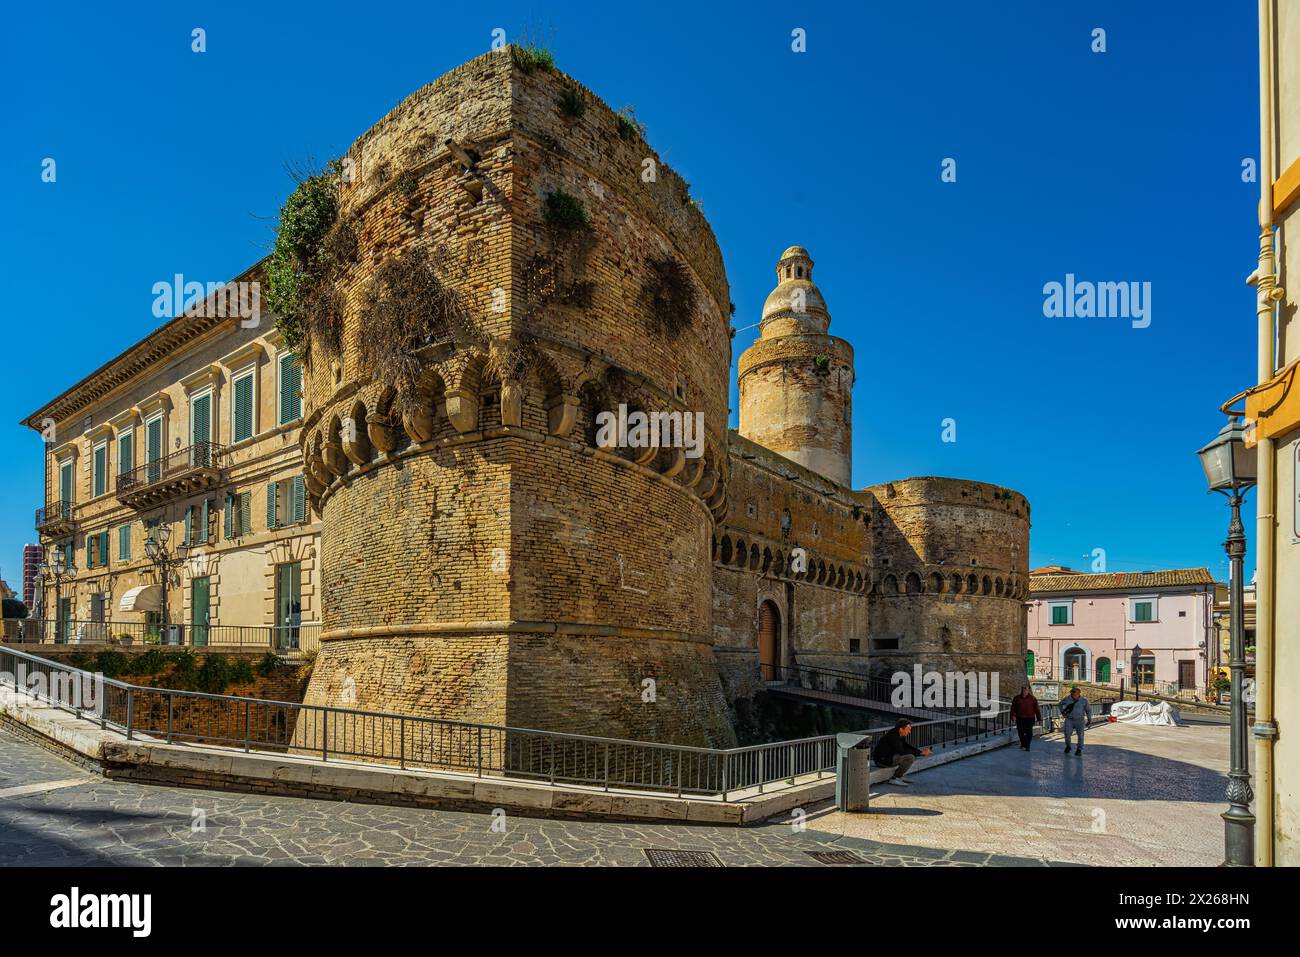 Scorcio dei bastioni del castello Caldoresco nell'antica città di vasto. Vasto, provincia di Chieti, Abruzzo, Italia, Europa Foto Stock